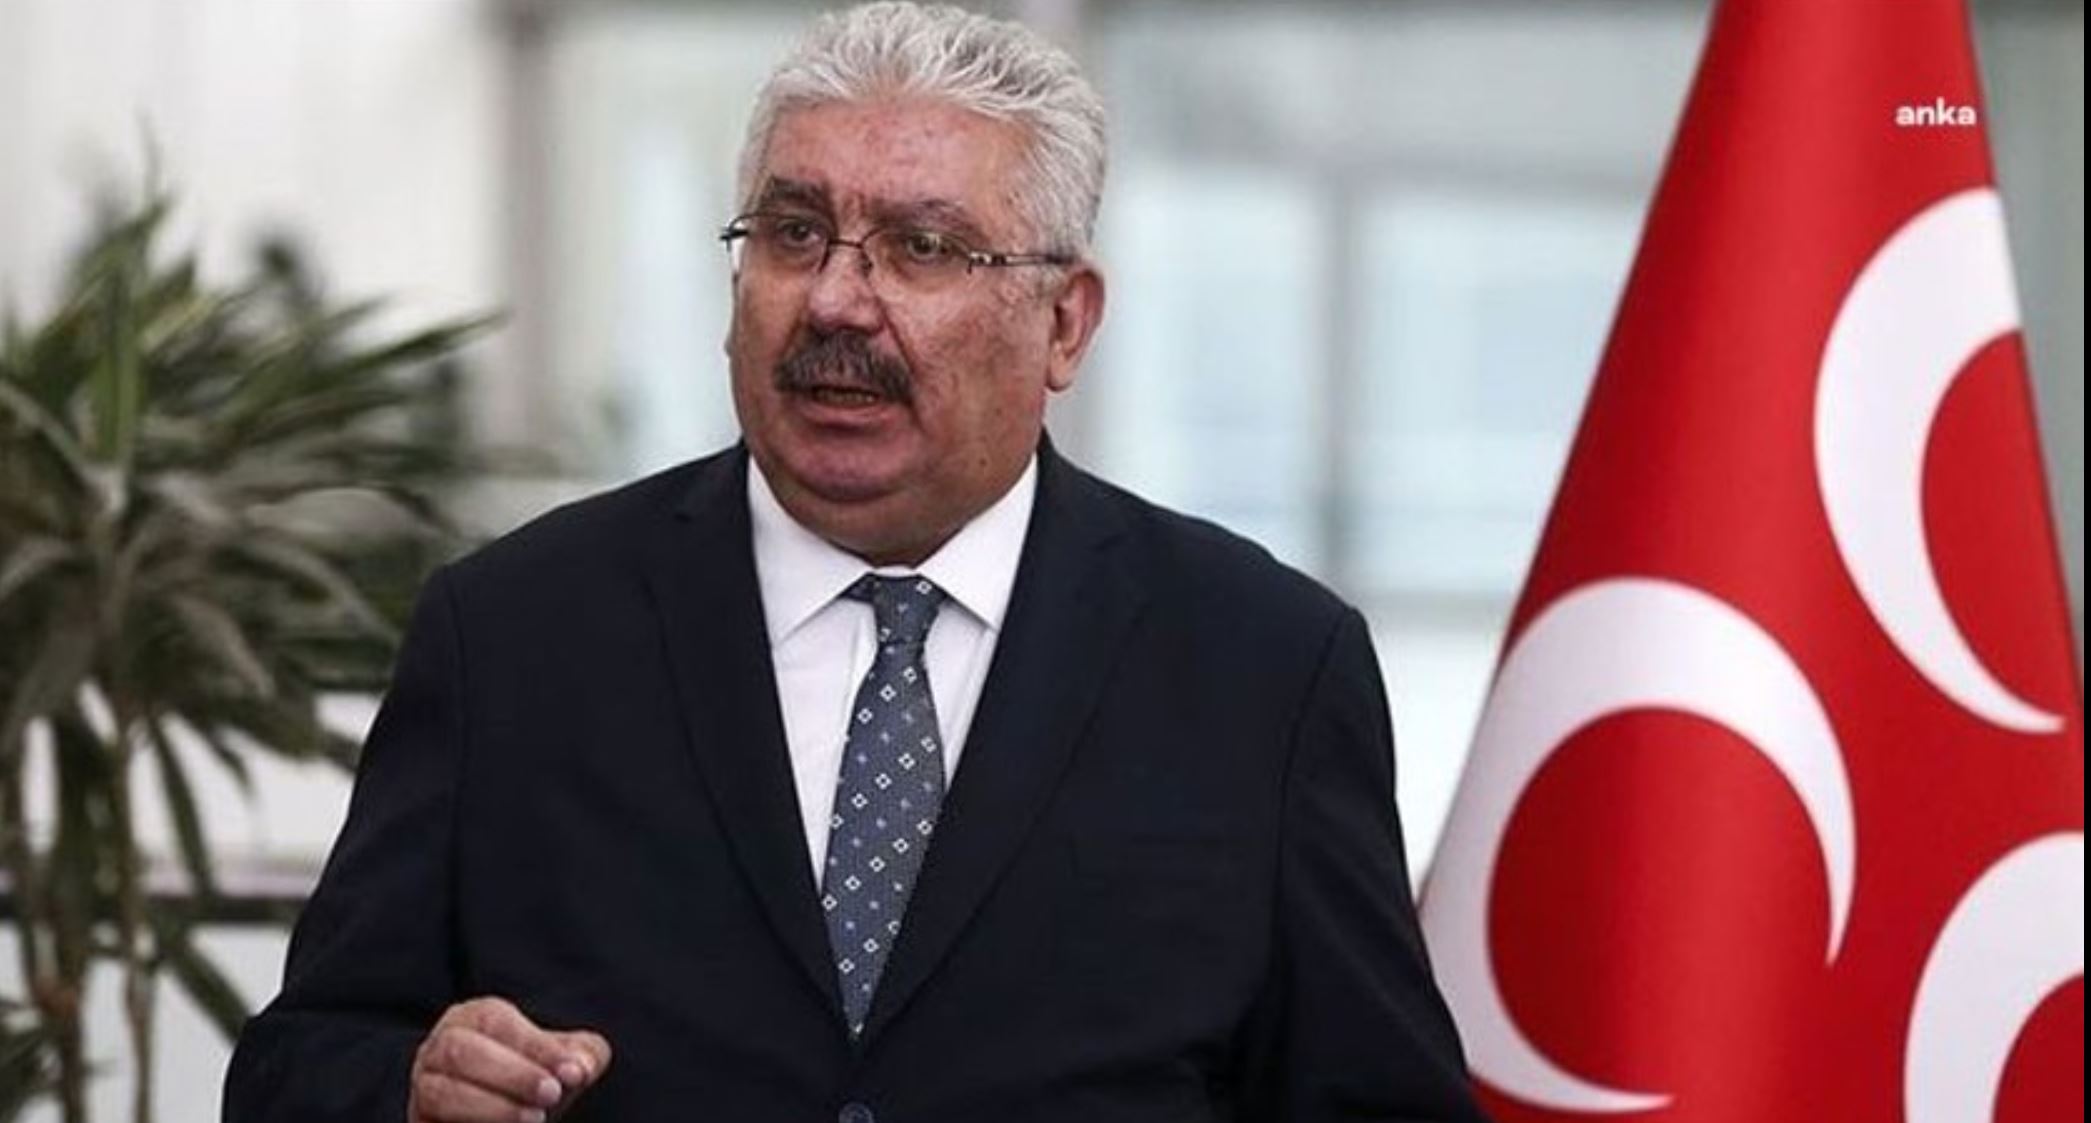 MHP Genel Başkan Yardımcısı Semih Yalçın:”Özgür Özel, kafasına çuval geçirildiğinde anlayacak”